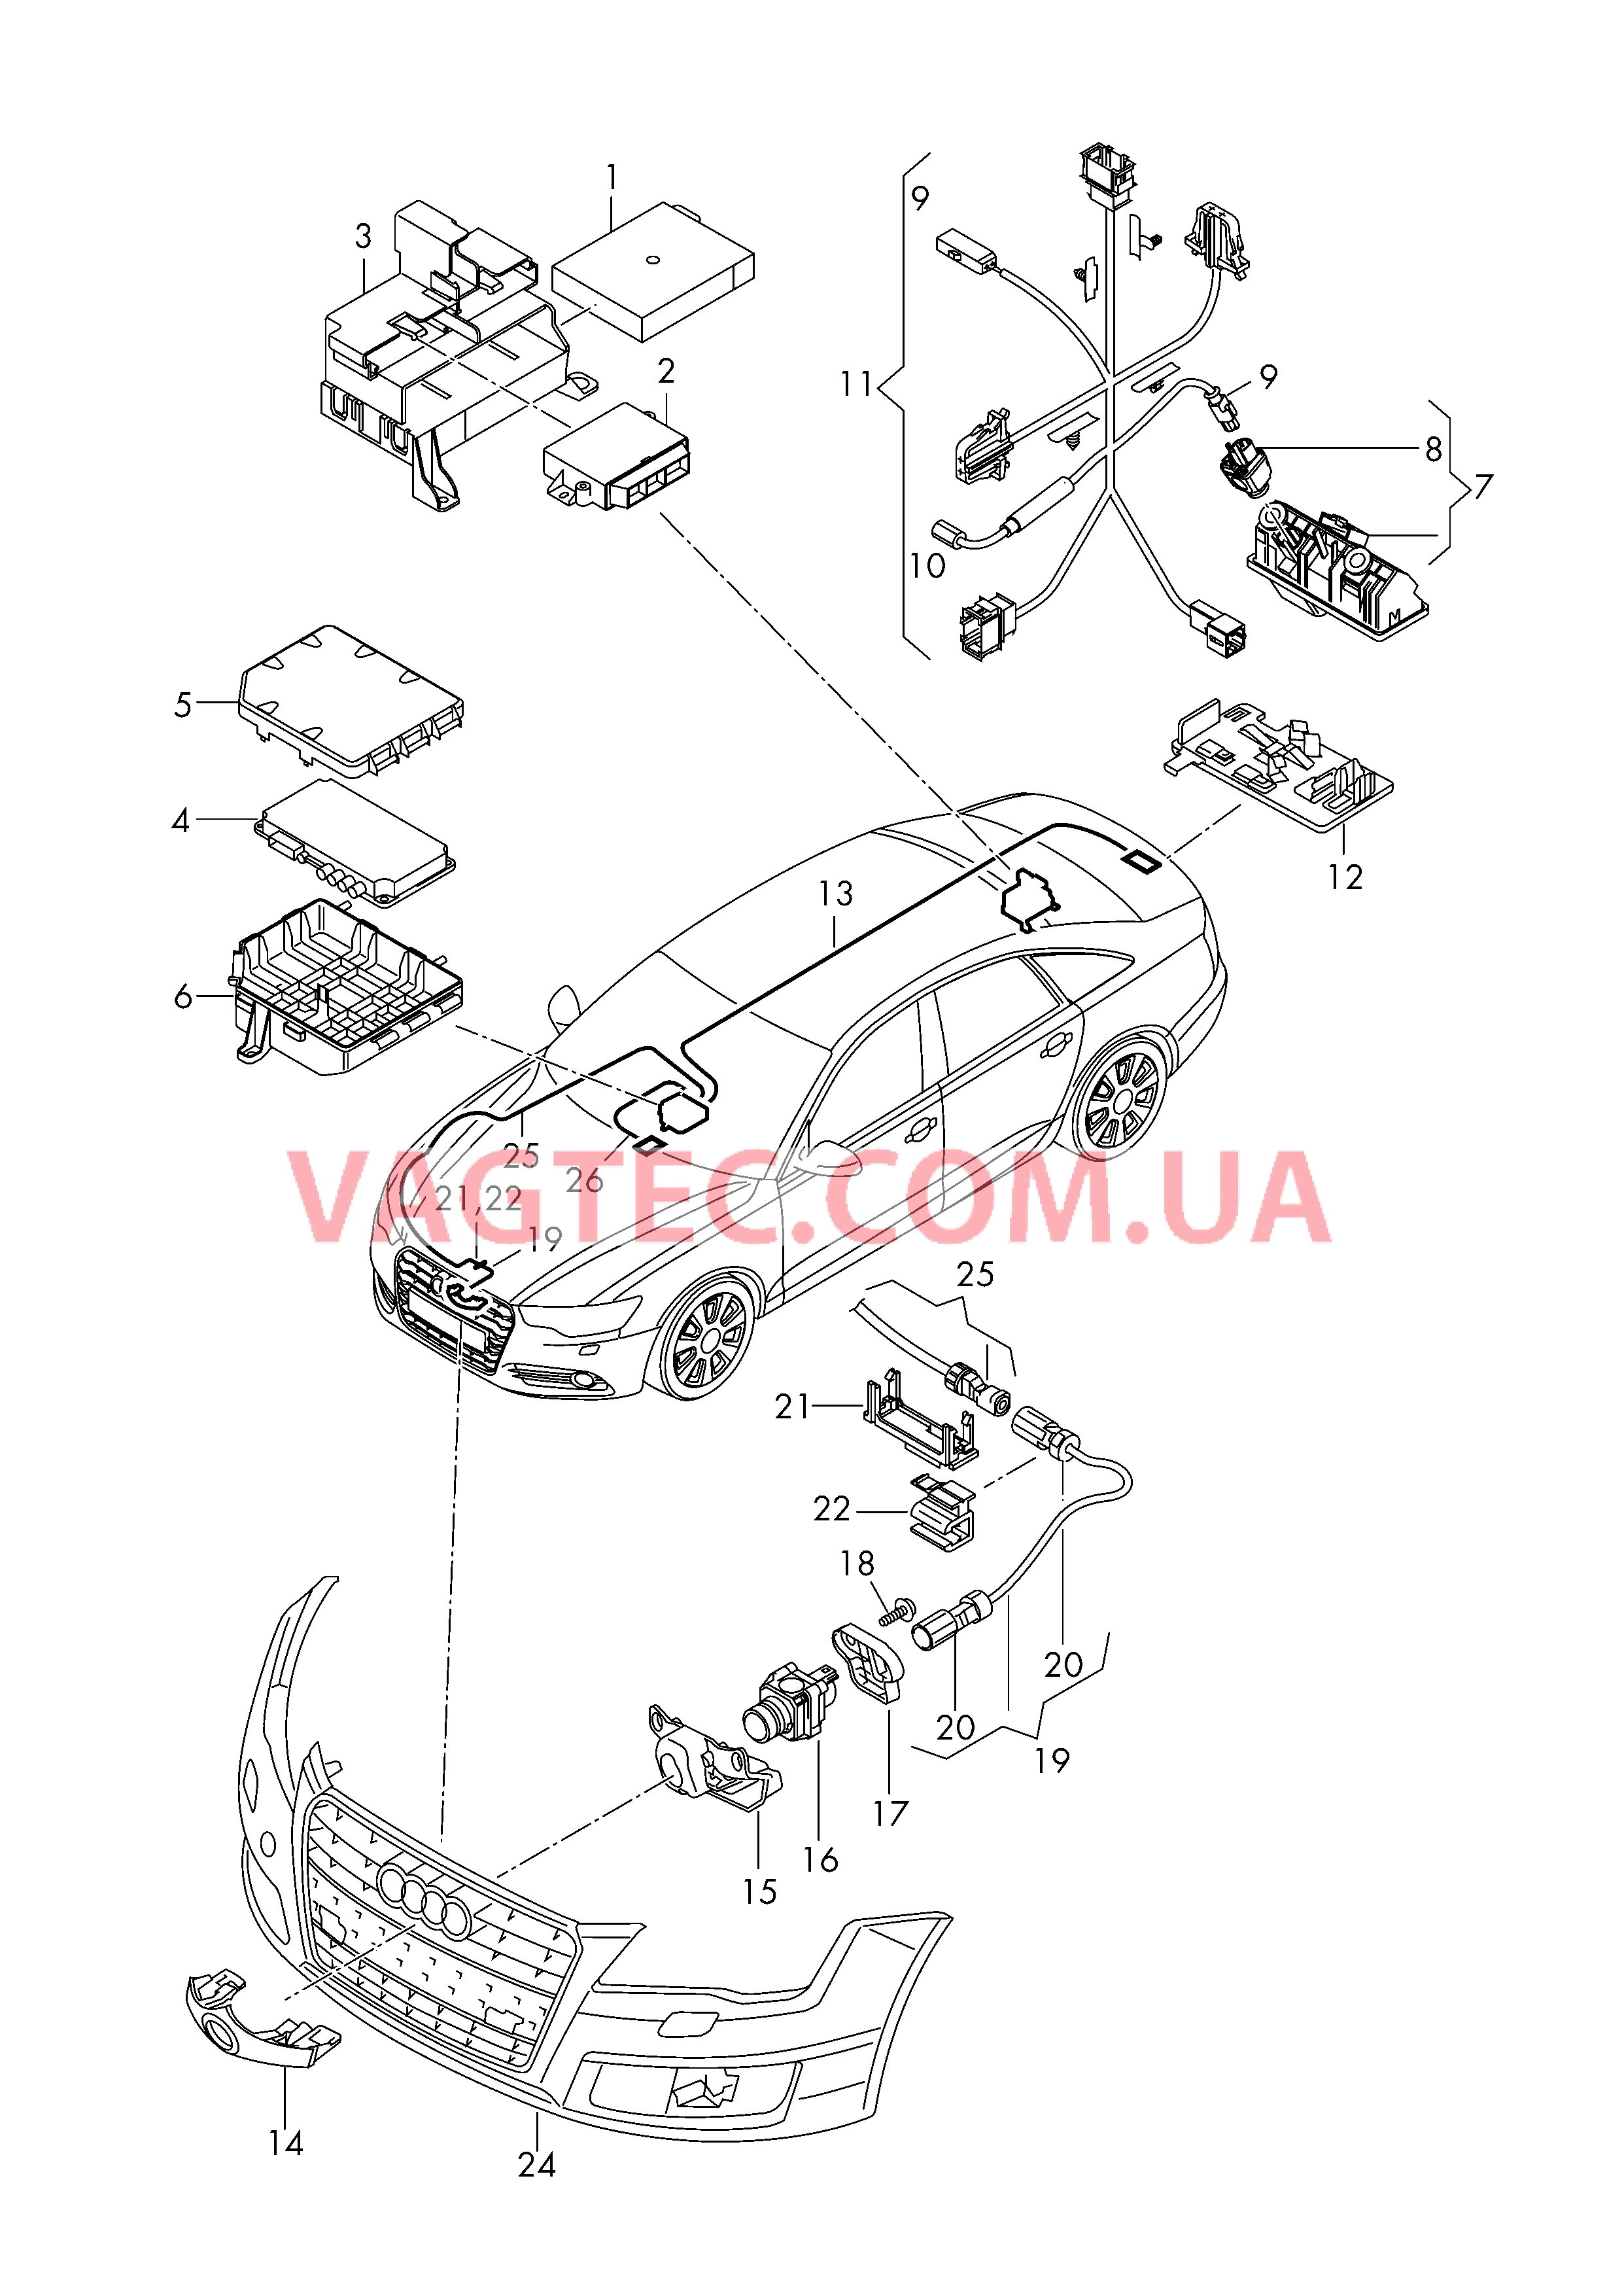 Парковочный ассистент с камерой заднего вида  и Камера сист. кругового обзора  для AUDI A6 2017